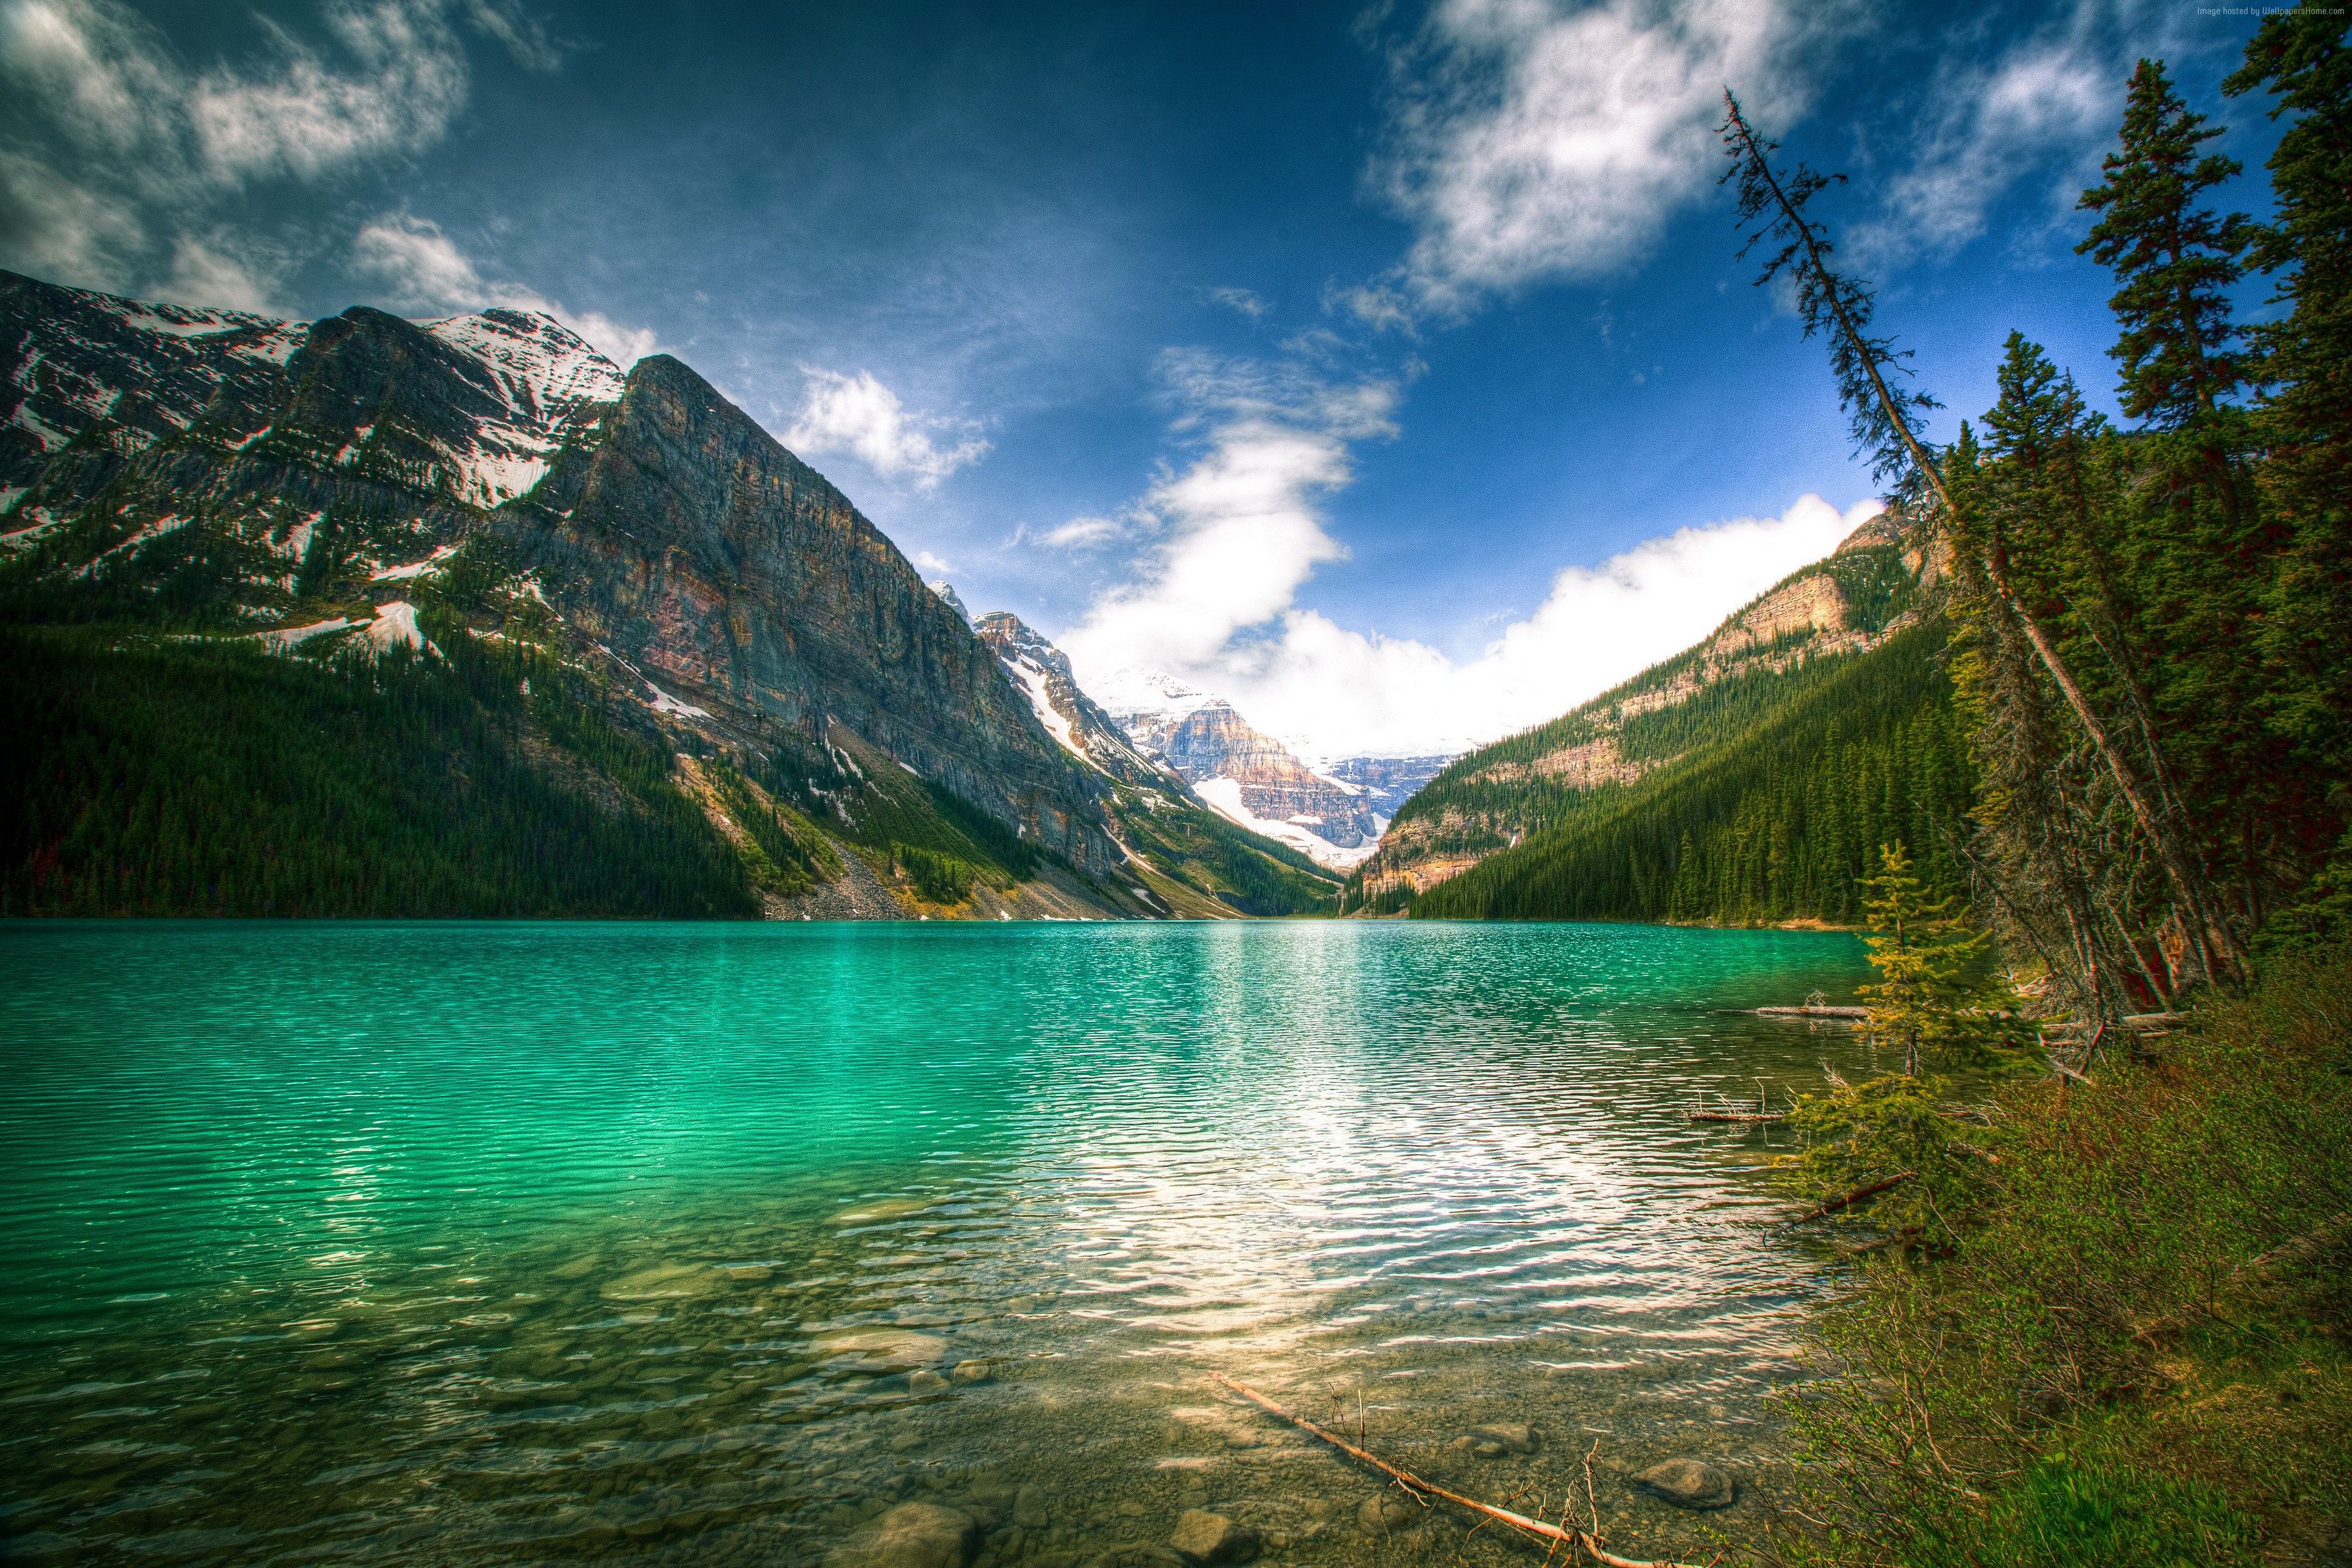 #Canada, #Lake Louise, #travel, #beach, #mountain, #Banff